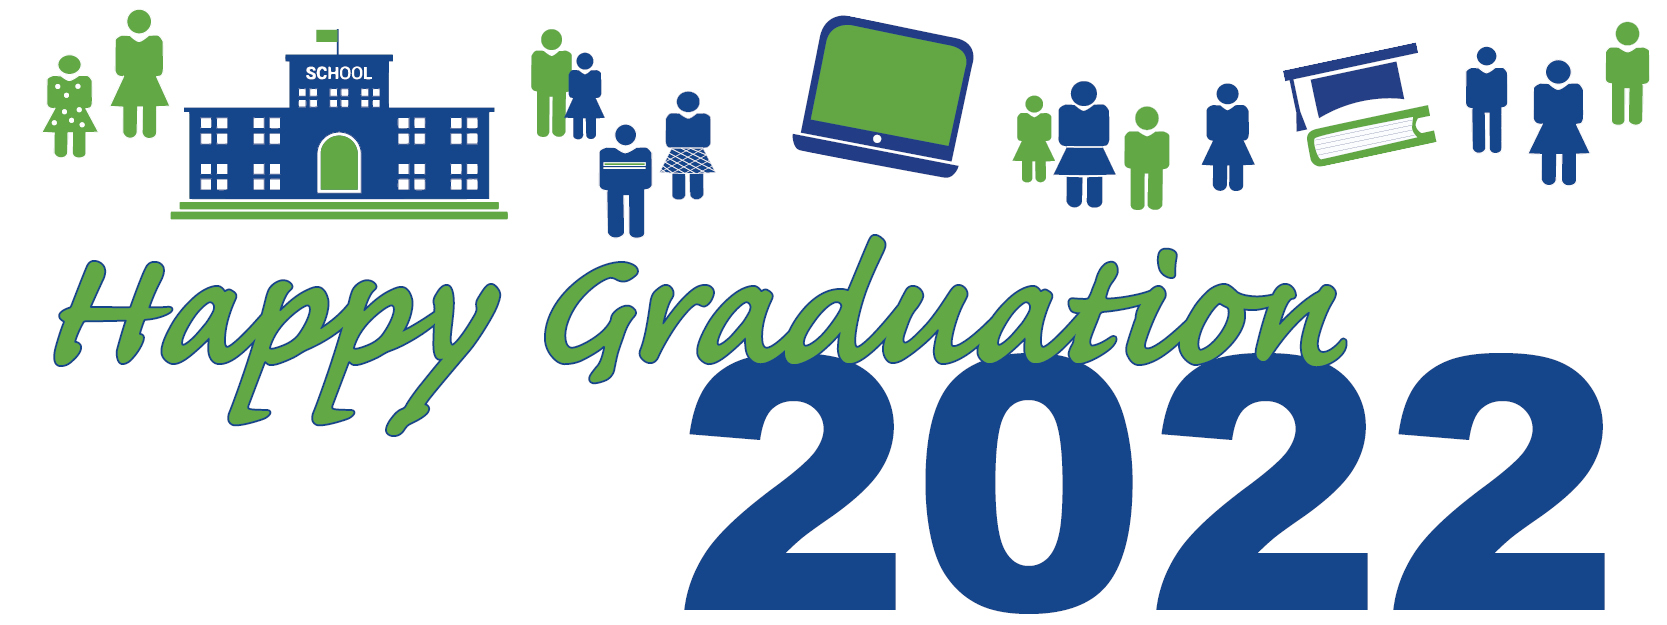 Congrats Grads Web Slider Banner 2022 06